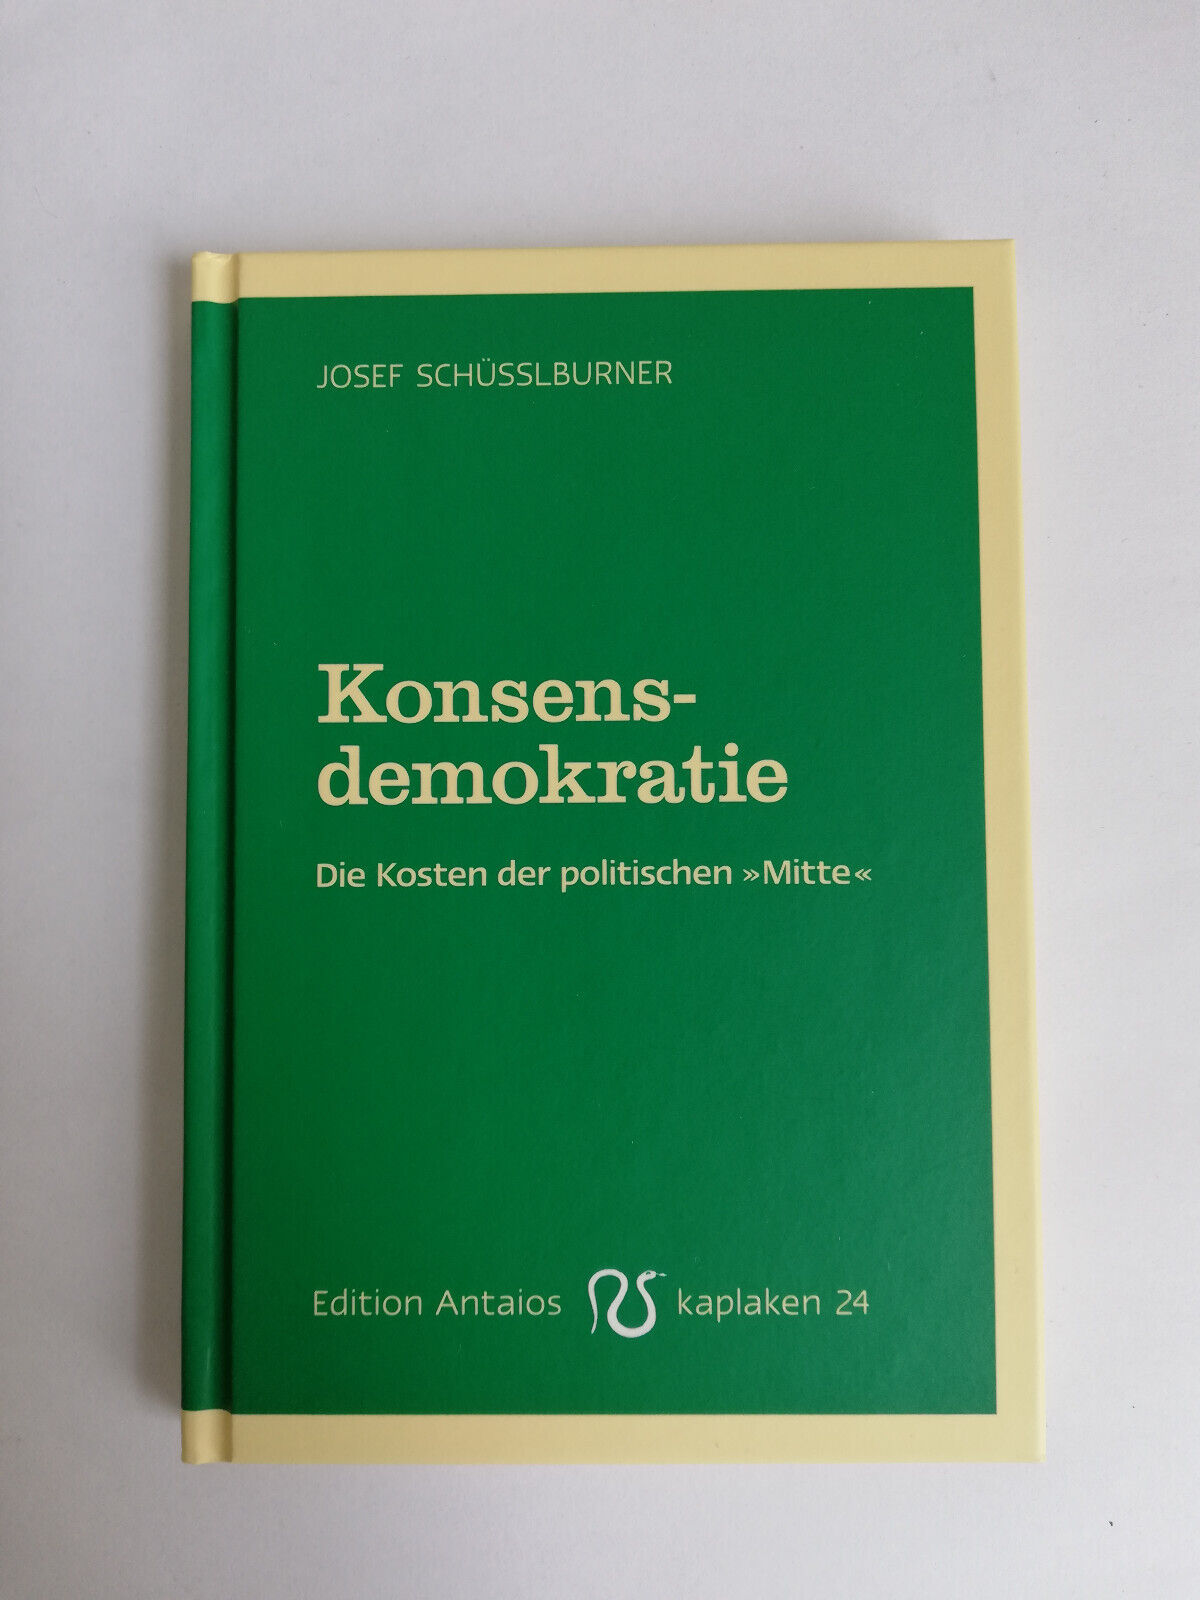 Konsensdemokratie von Josef Schüsslburner, Kaplaken 24, ungelesen - Josef Schüsslburner